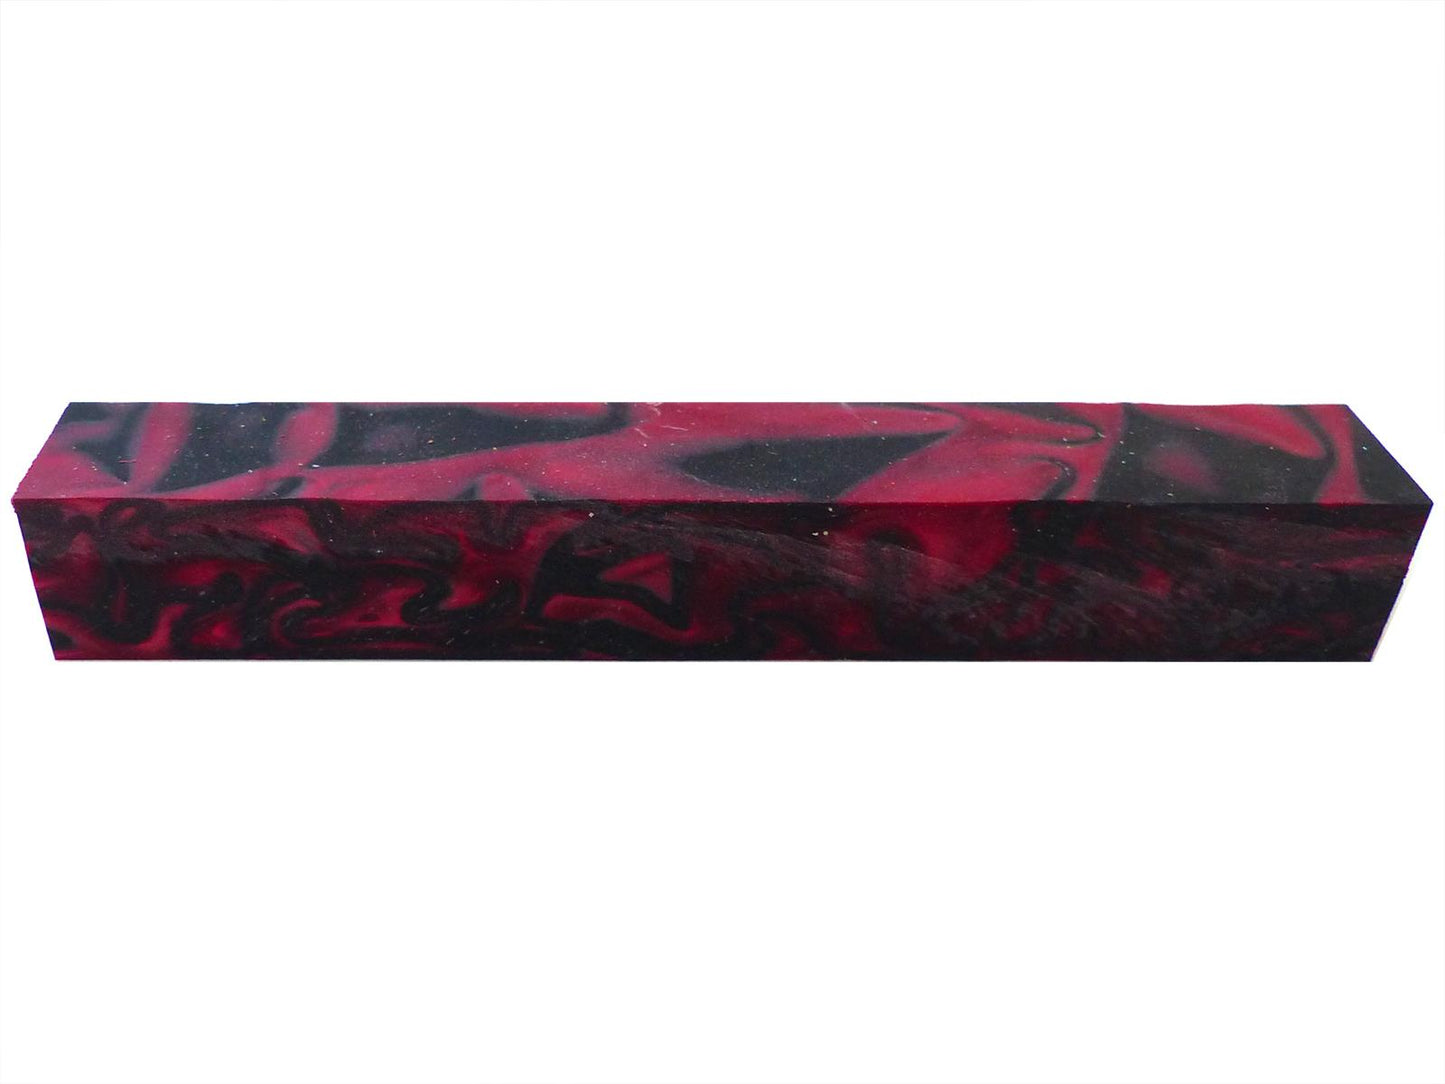 Turners' Mill Kirinite True Blood Abstract Kirinite Acrylic Pen Blank - 150x20x20mm (5.9x0.79x0.79"), 6x3/4x3/4"